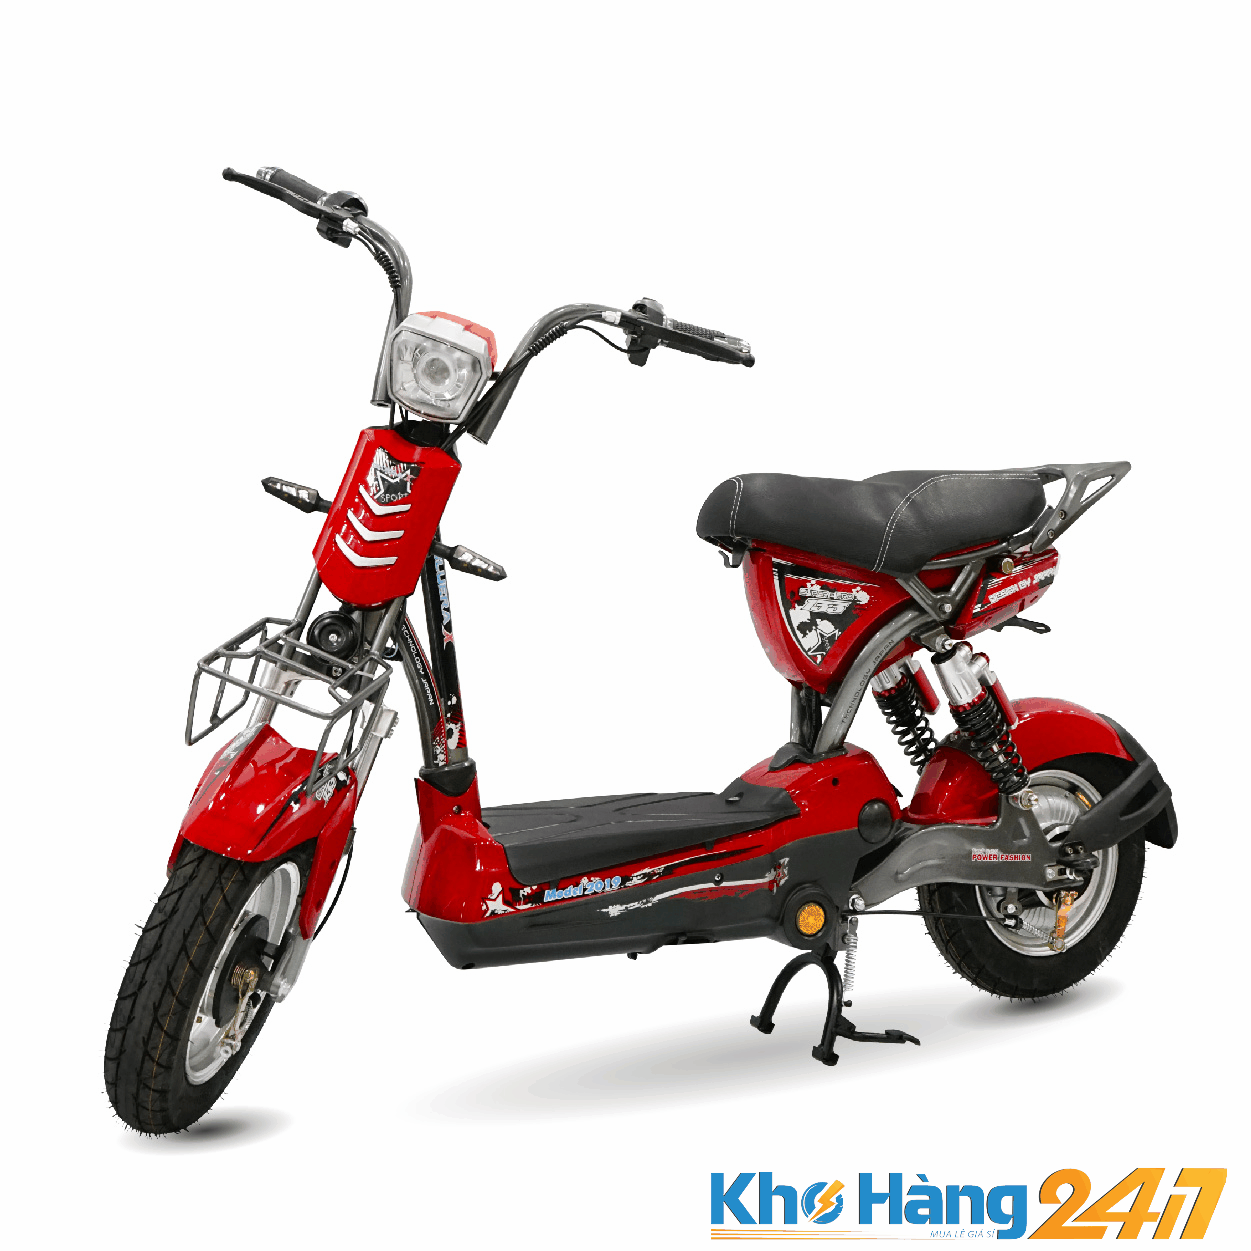 Bluera 133XPro New 2020 01 - Mua xe đạp điện mới giá rẻ tại Khohang247.com